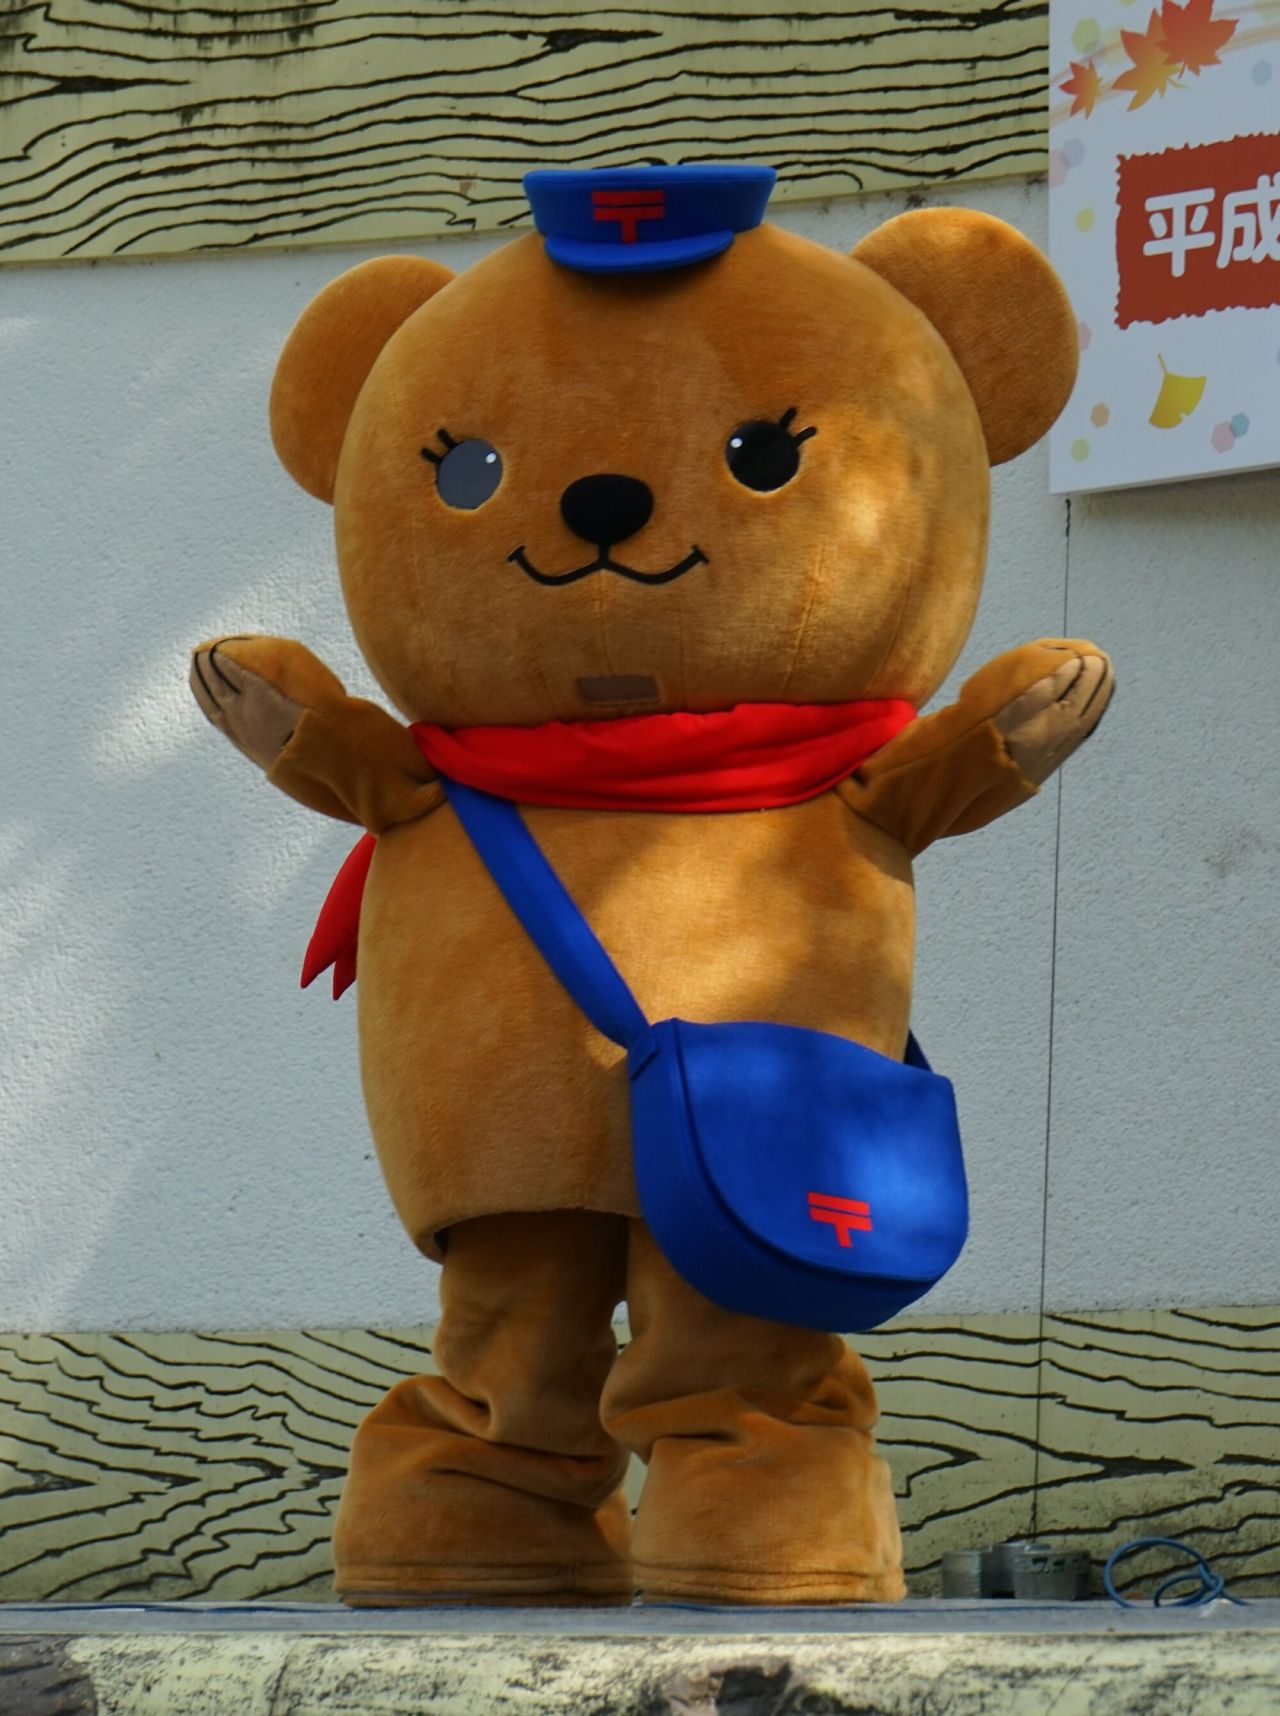 日本郵便のキャラクター「ぽすくま」。
郵便局のキャラなのがバッグのマークで分かる。
“Poskuma” JAPAN POST Co., Ltd, Japan.
Bear in a motif.